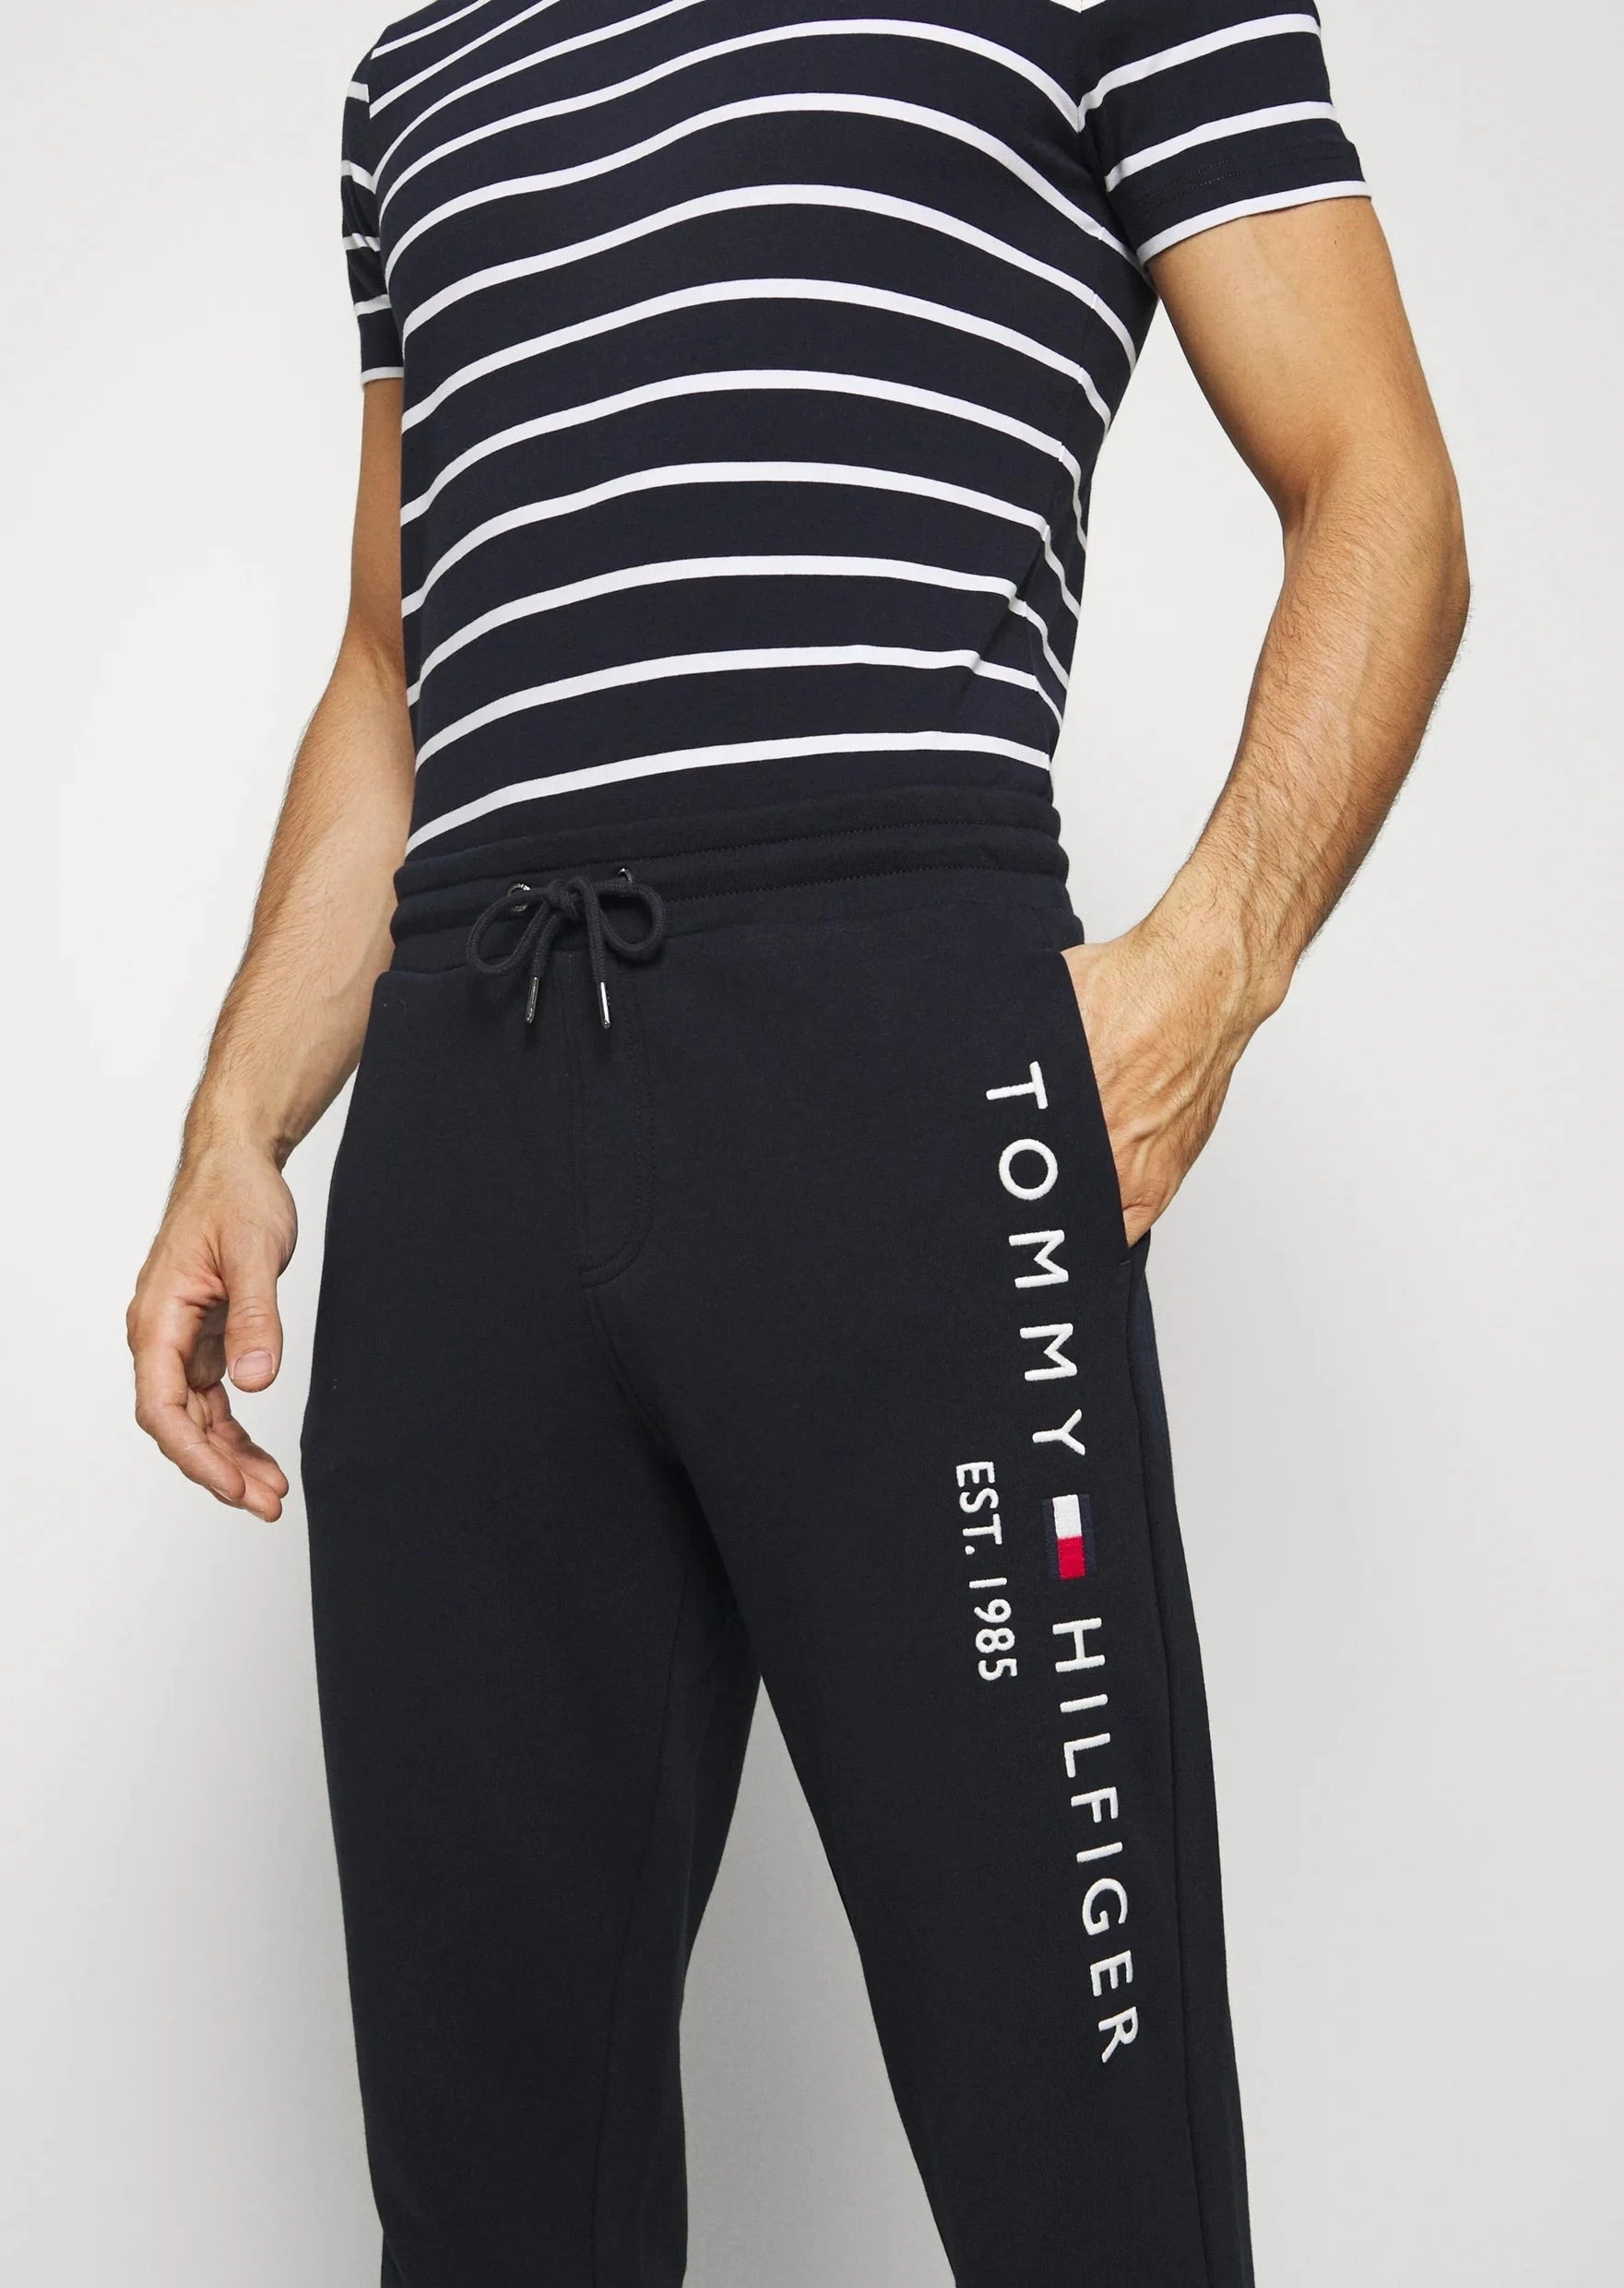 Pantalon de jogging Tommy Hilfiger marine pour homme I Georgespaul